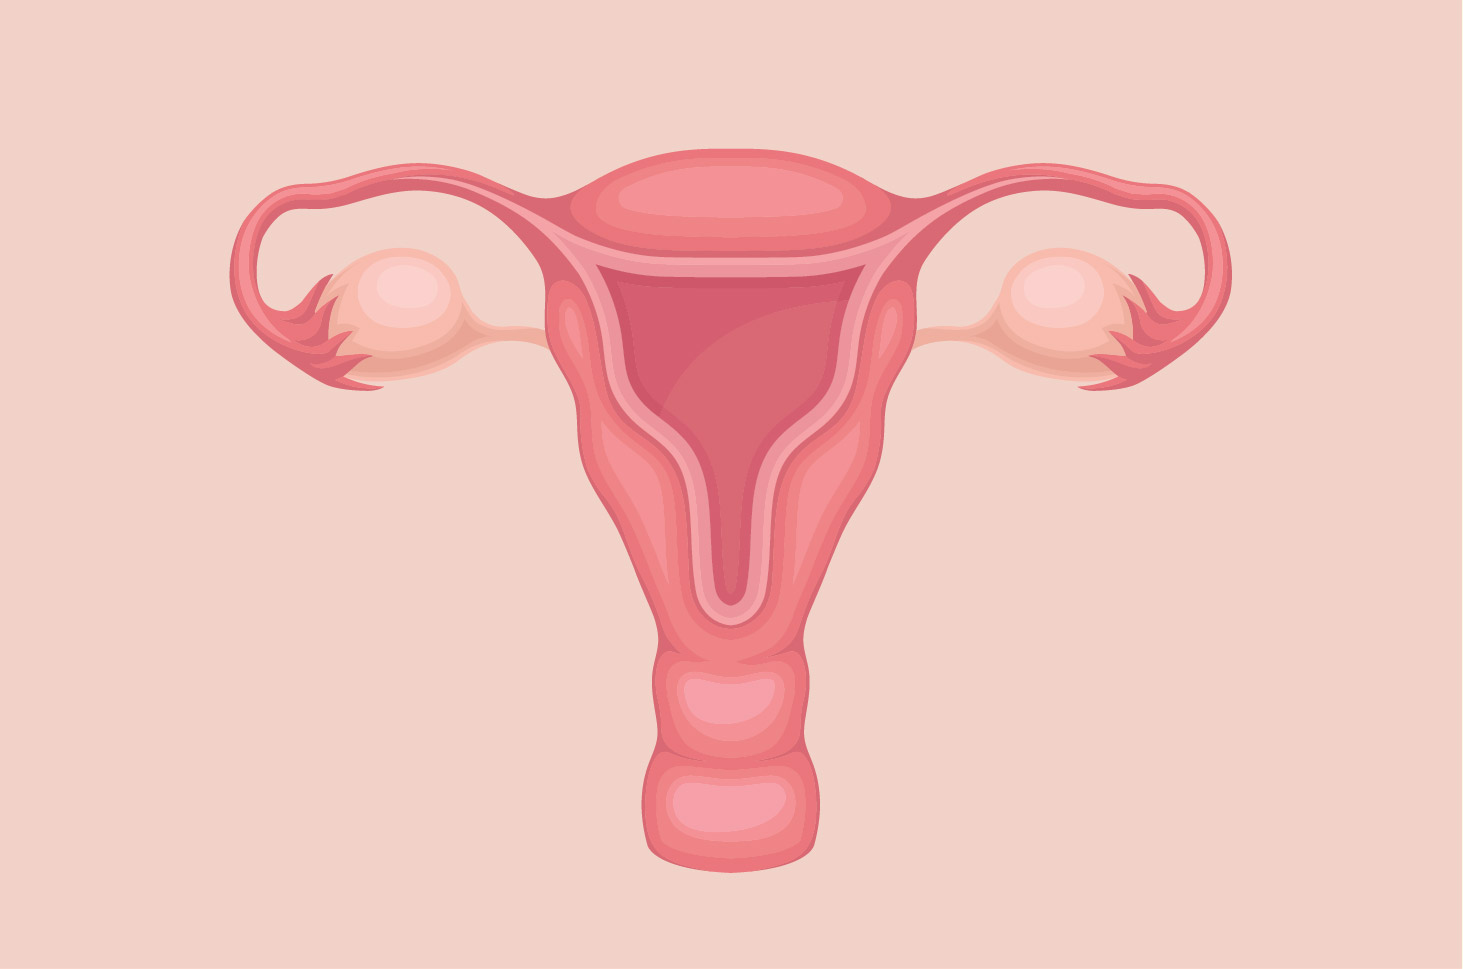 Explicația funcției uterine la femei